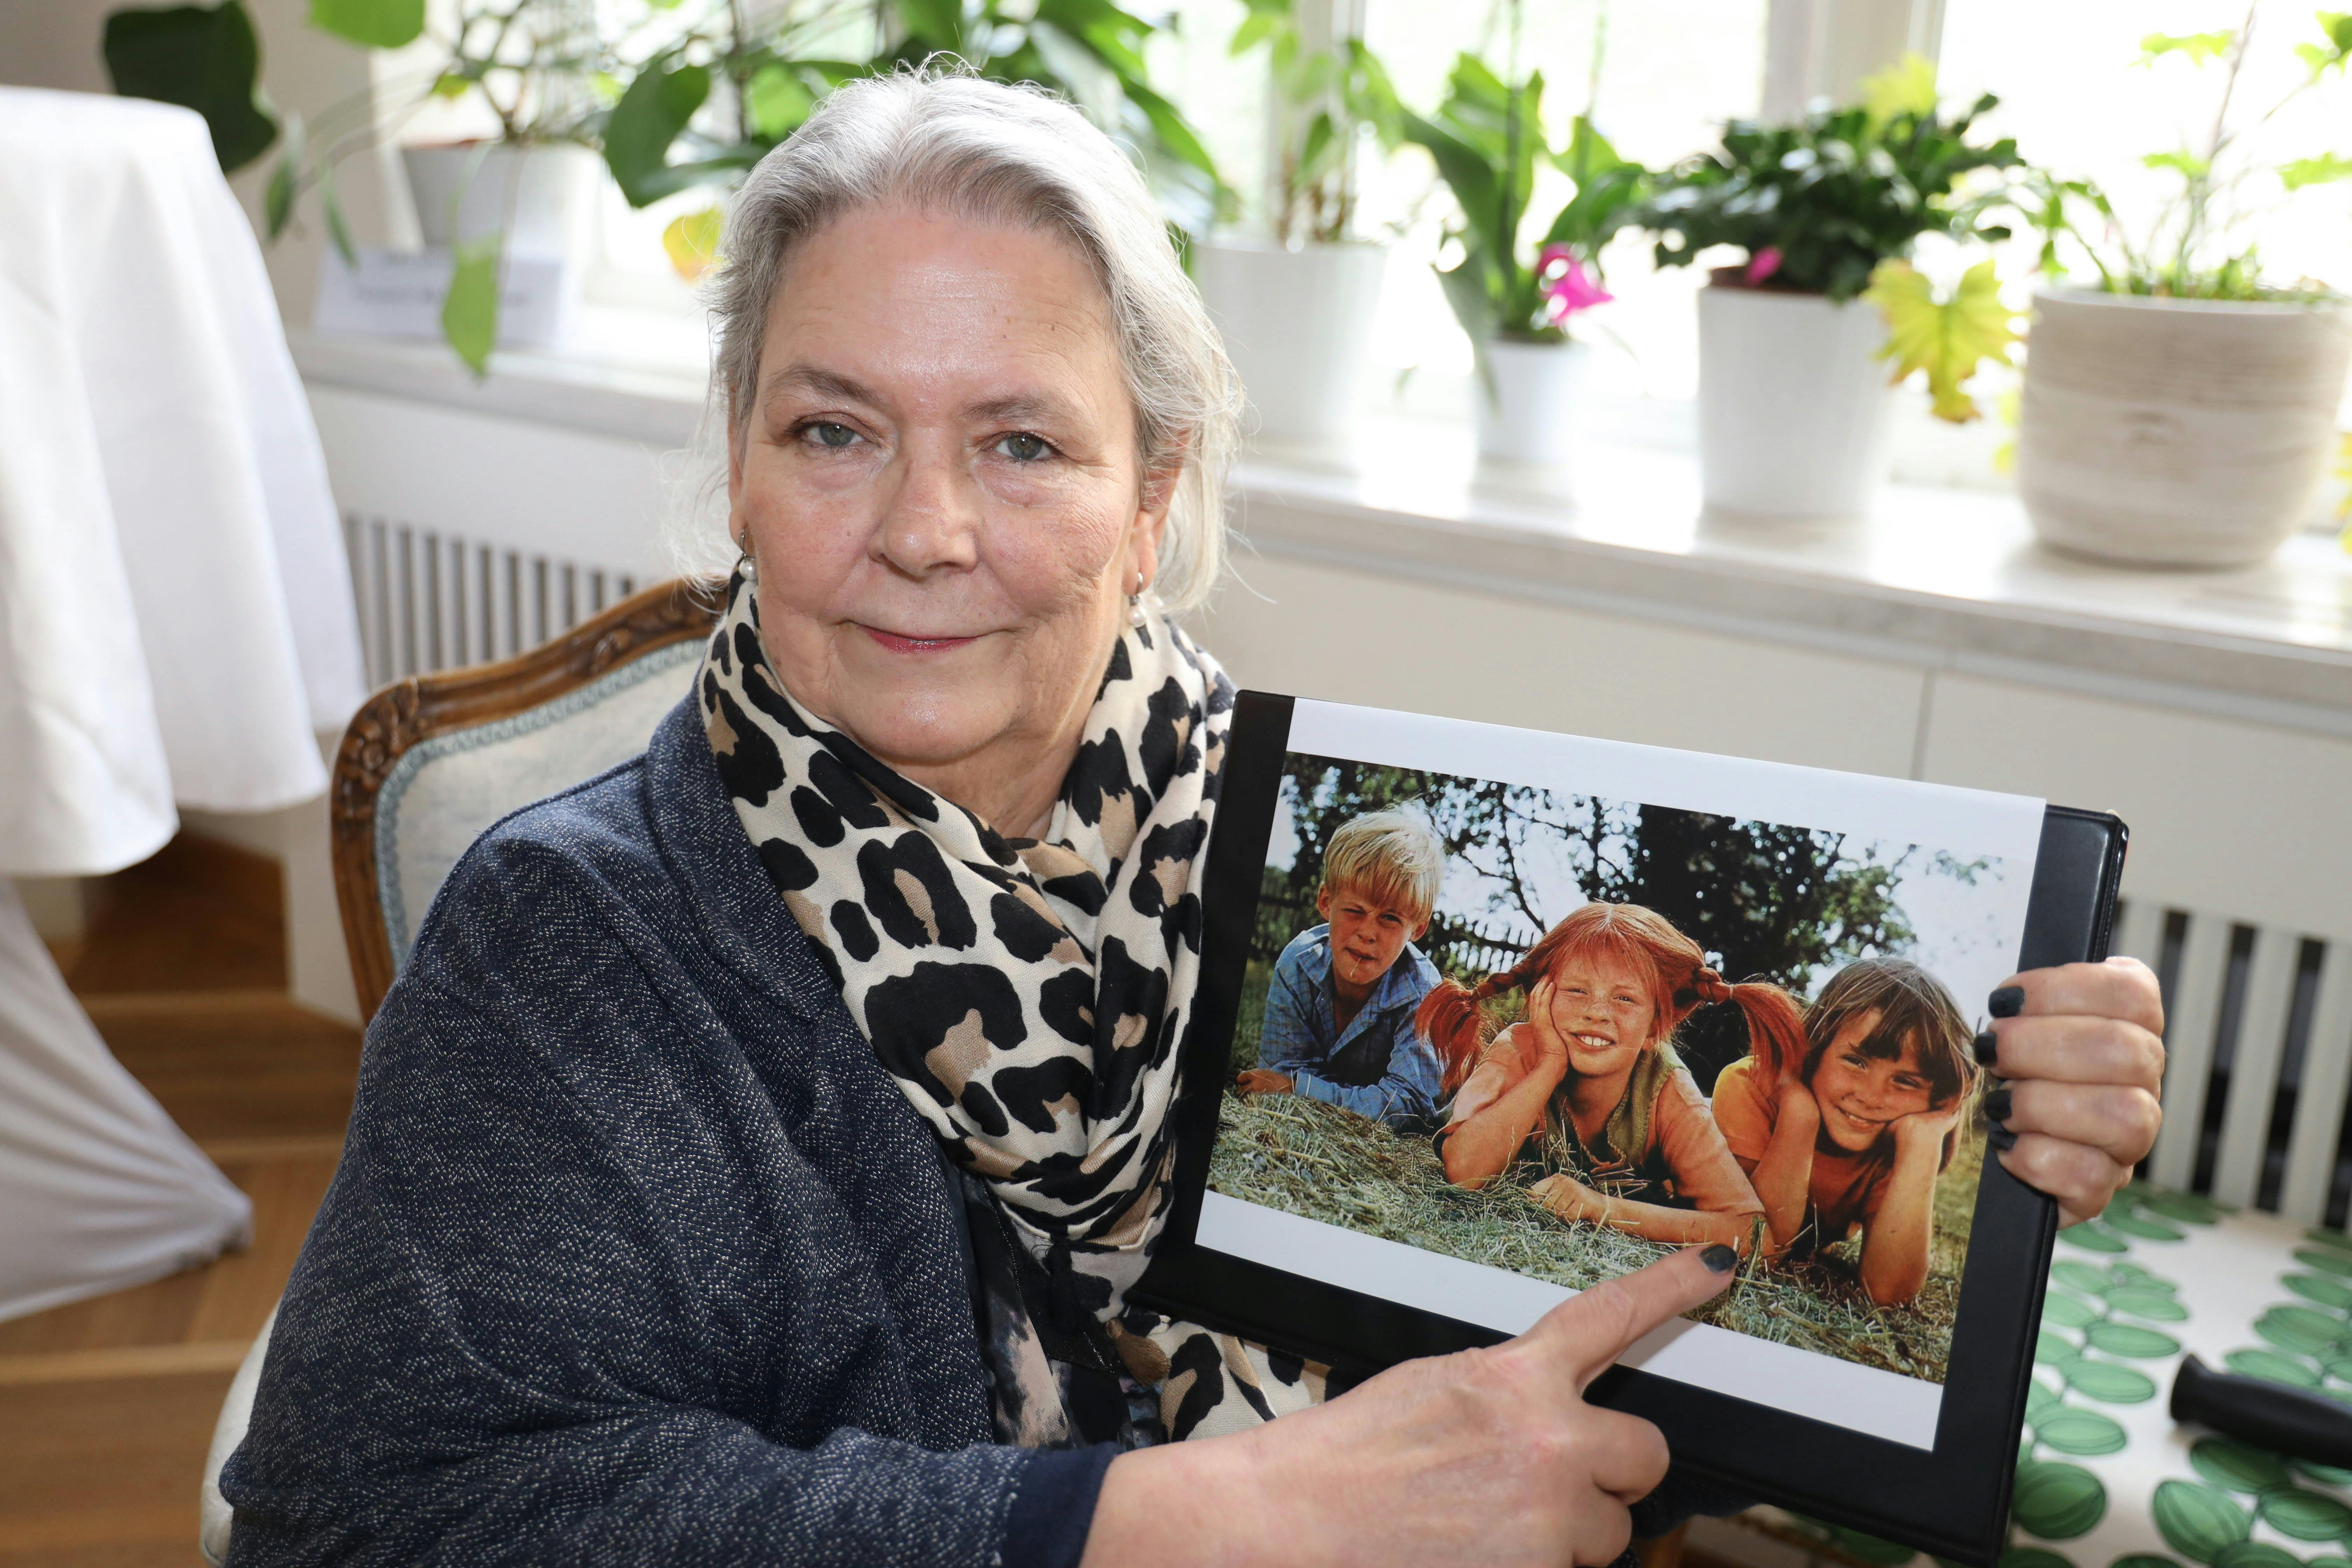 Maria Persson viser et billede frem af sig selv og sine medspillere i Pippi-serien under besøget i Østrig i sidste uge.
